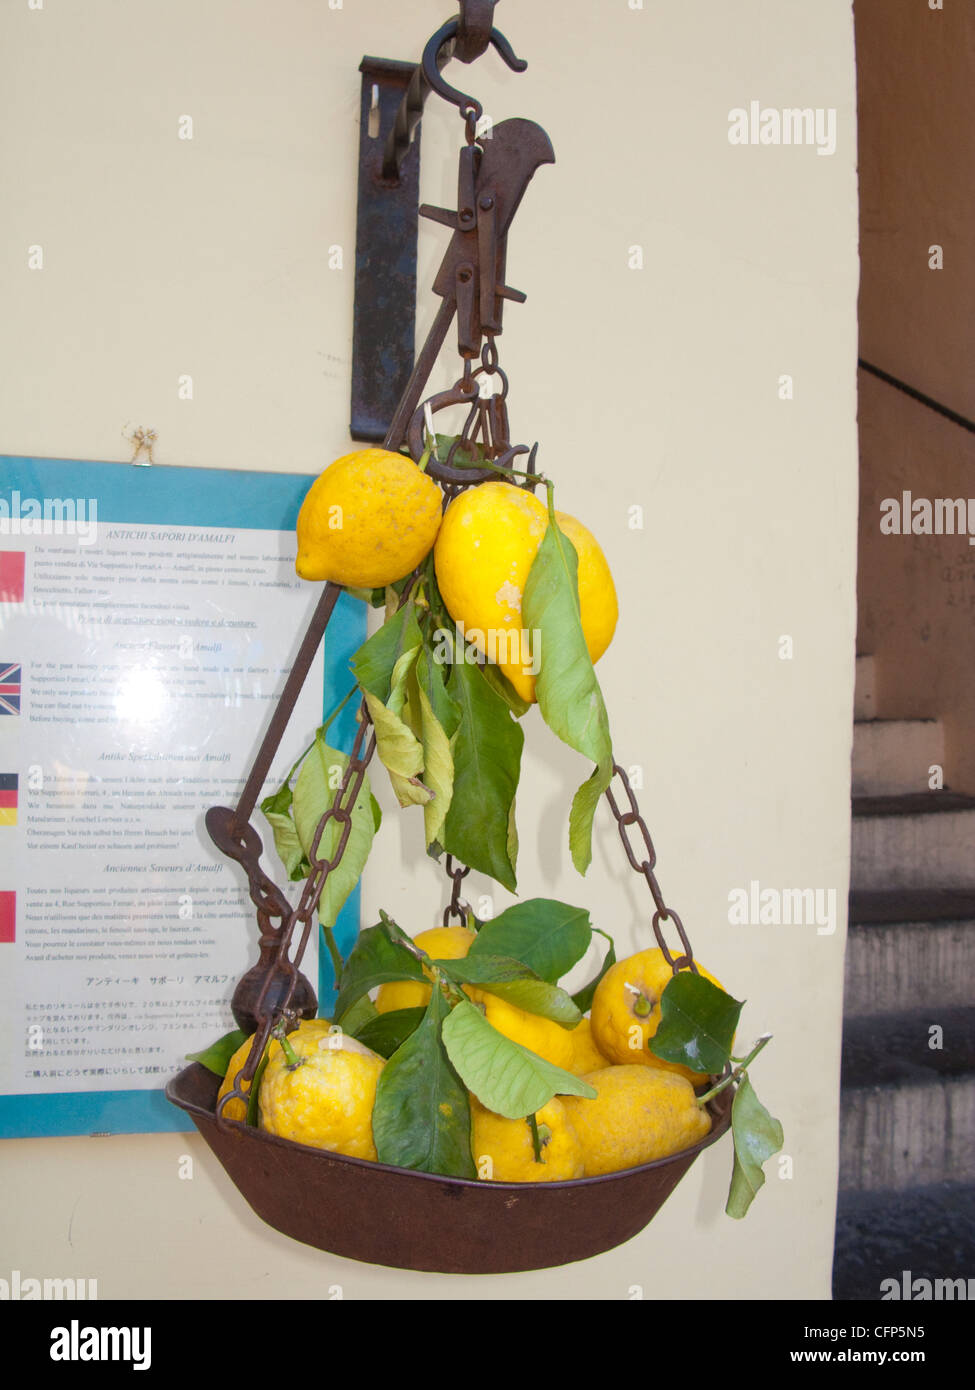 Citrons frais en face d'un magasin de fruits, village d'Amalfi, côte amalfitaine, UNESCO World Heritage site, Campanie, Italie, mer Méditerranée Banque D'Images